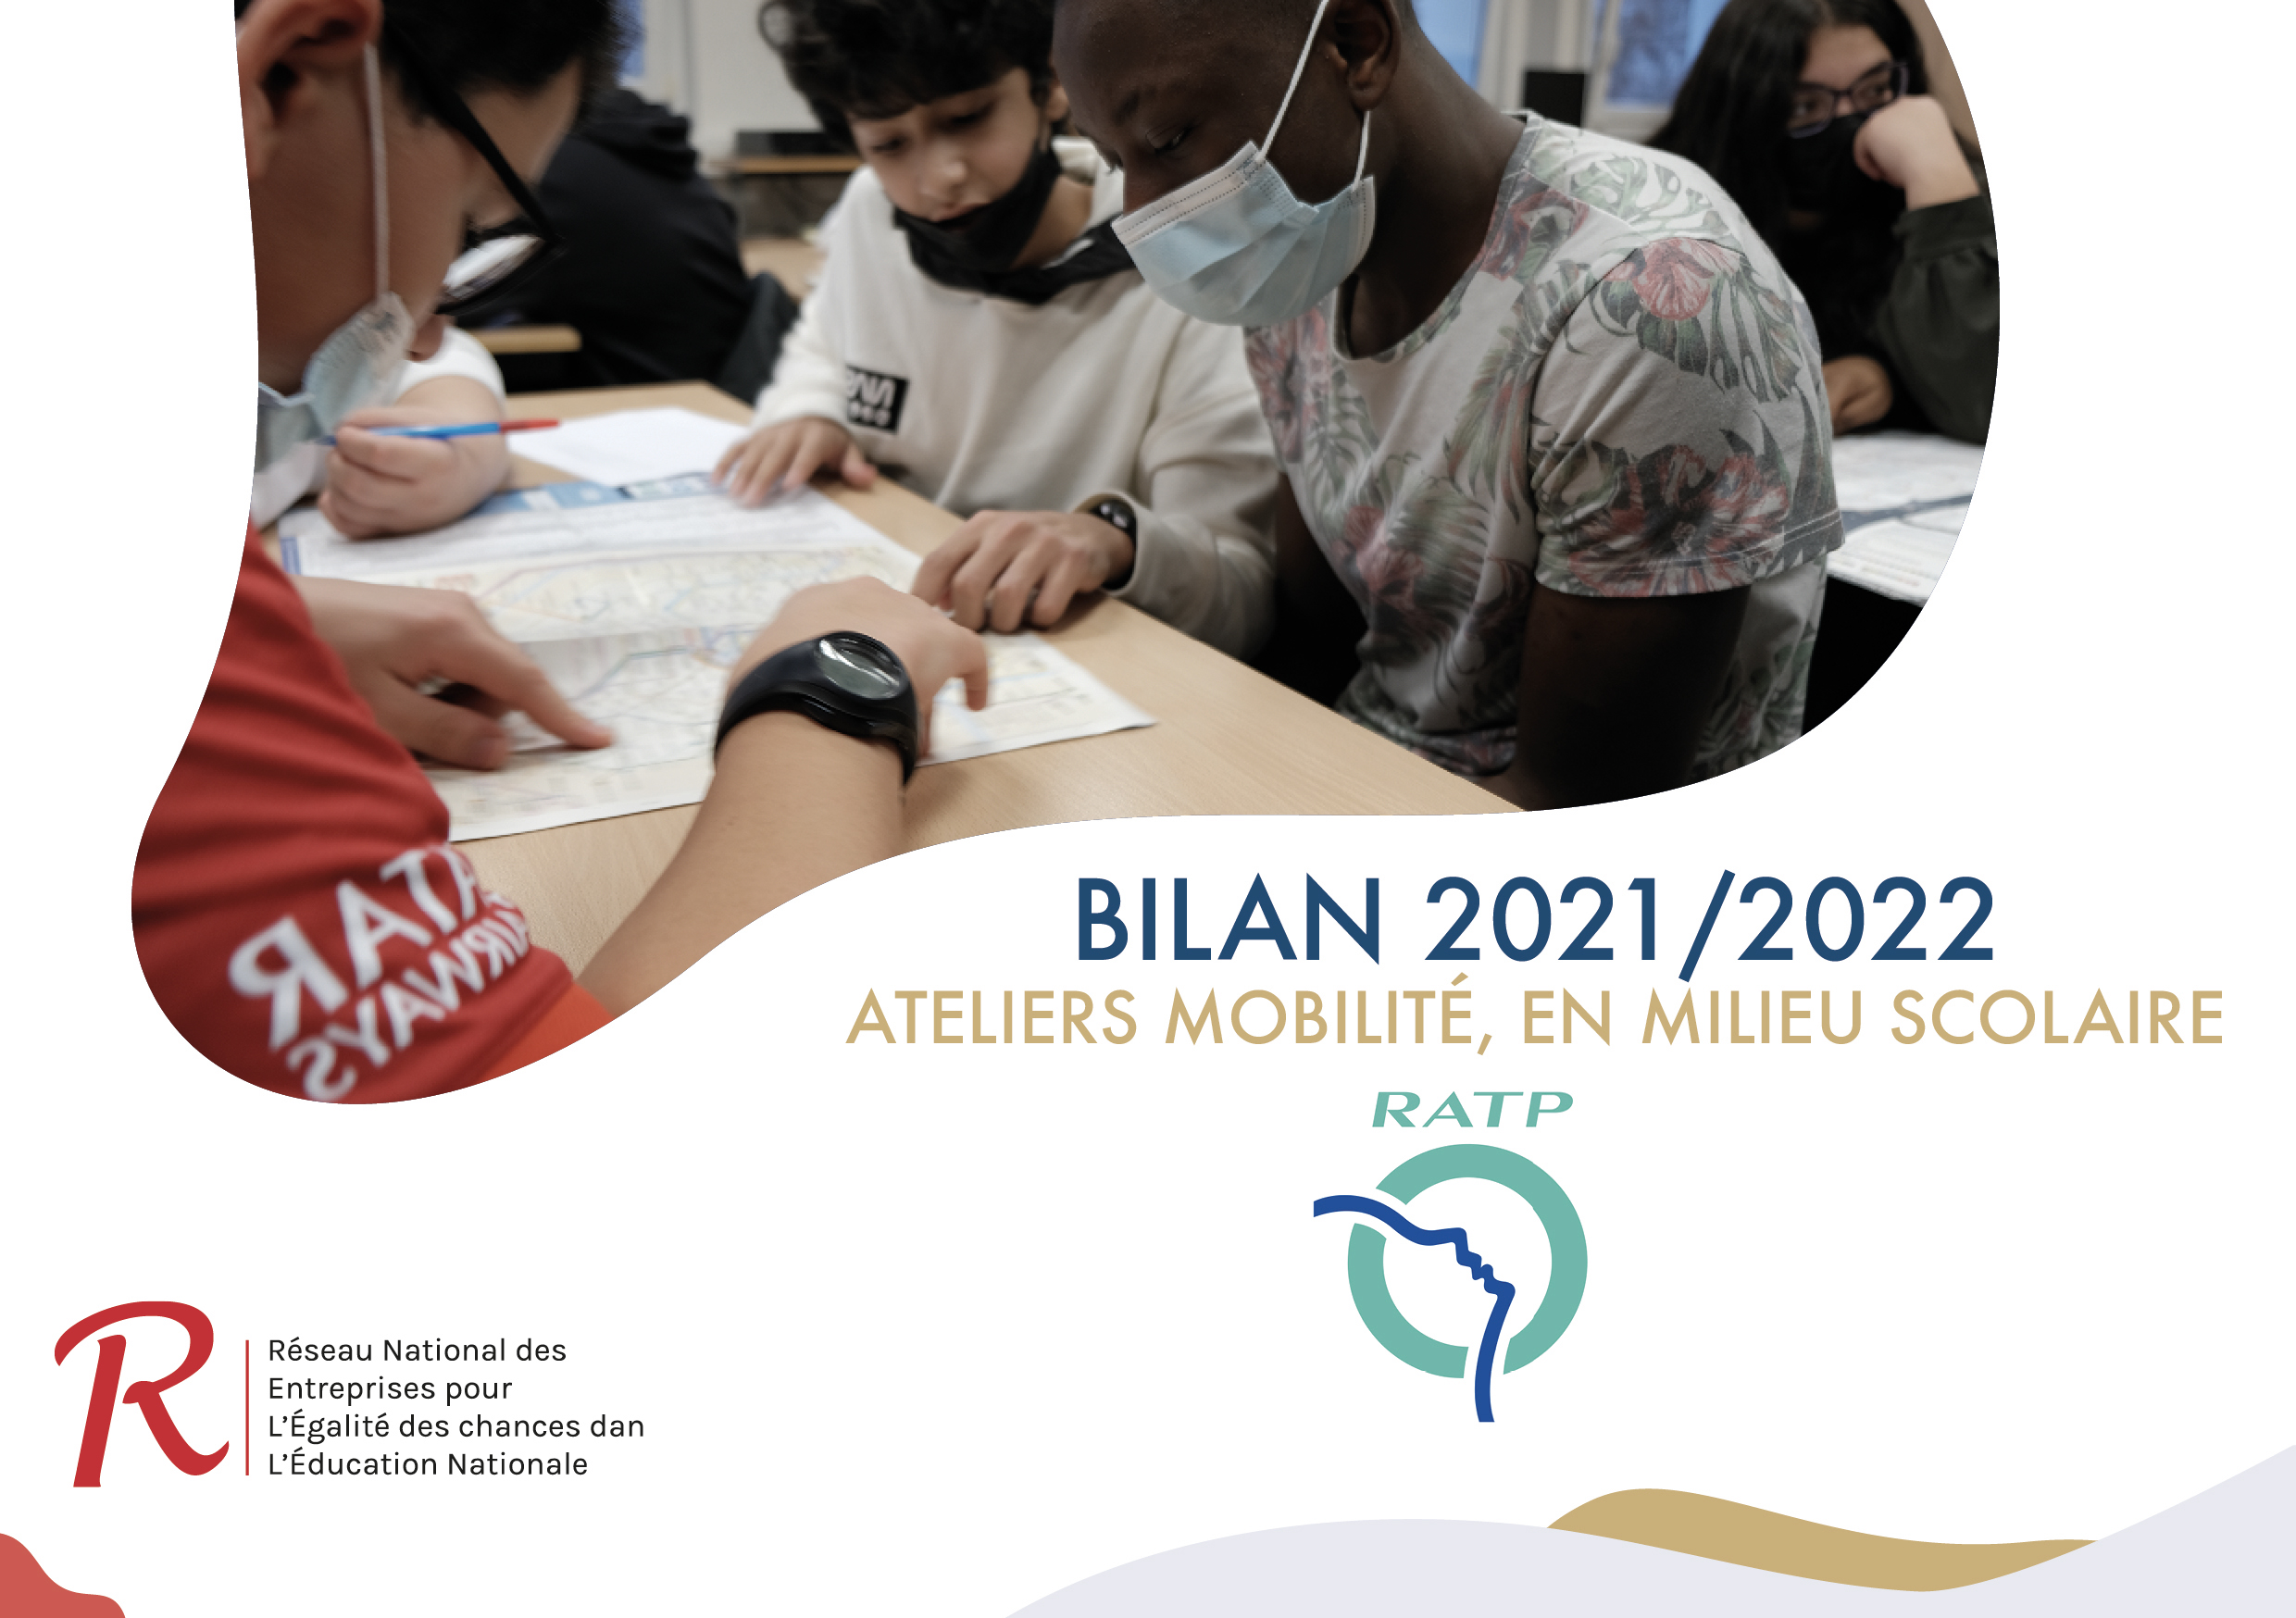 Bilan 2021/2022 des “Ateliers mobilité, en milieu scolaire” de la RATP